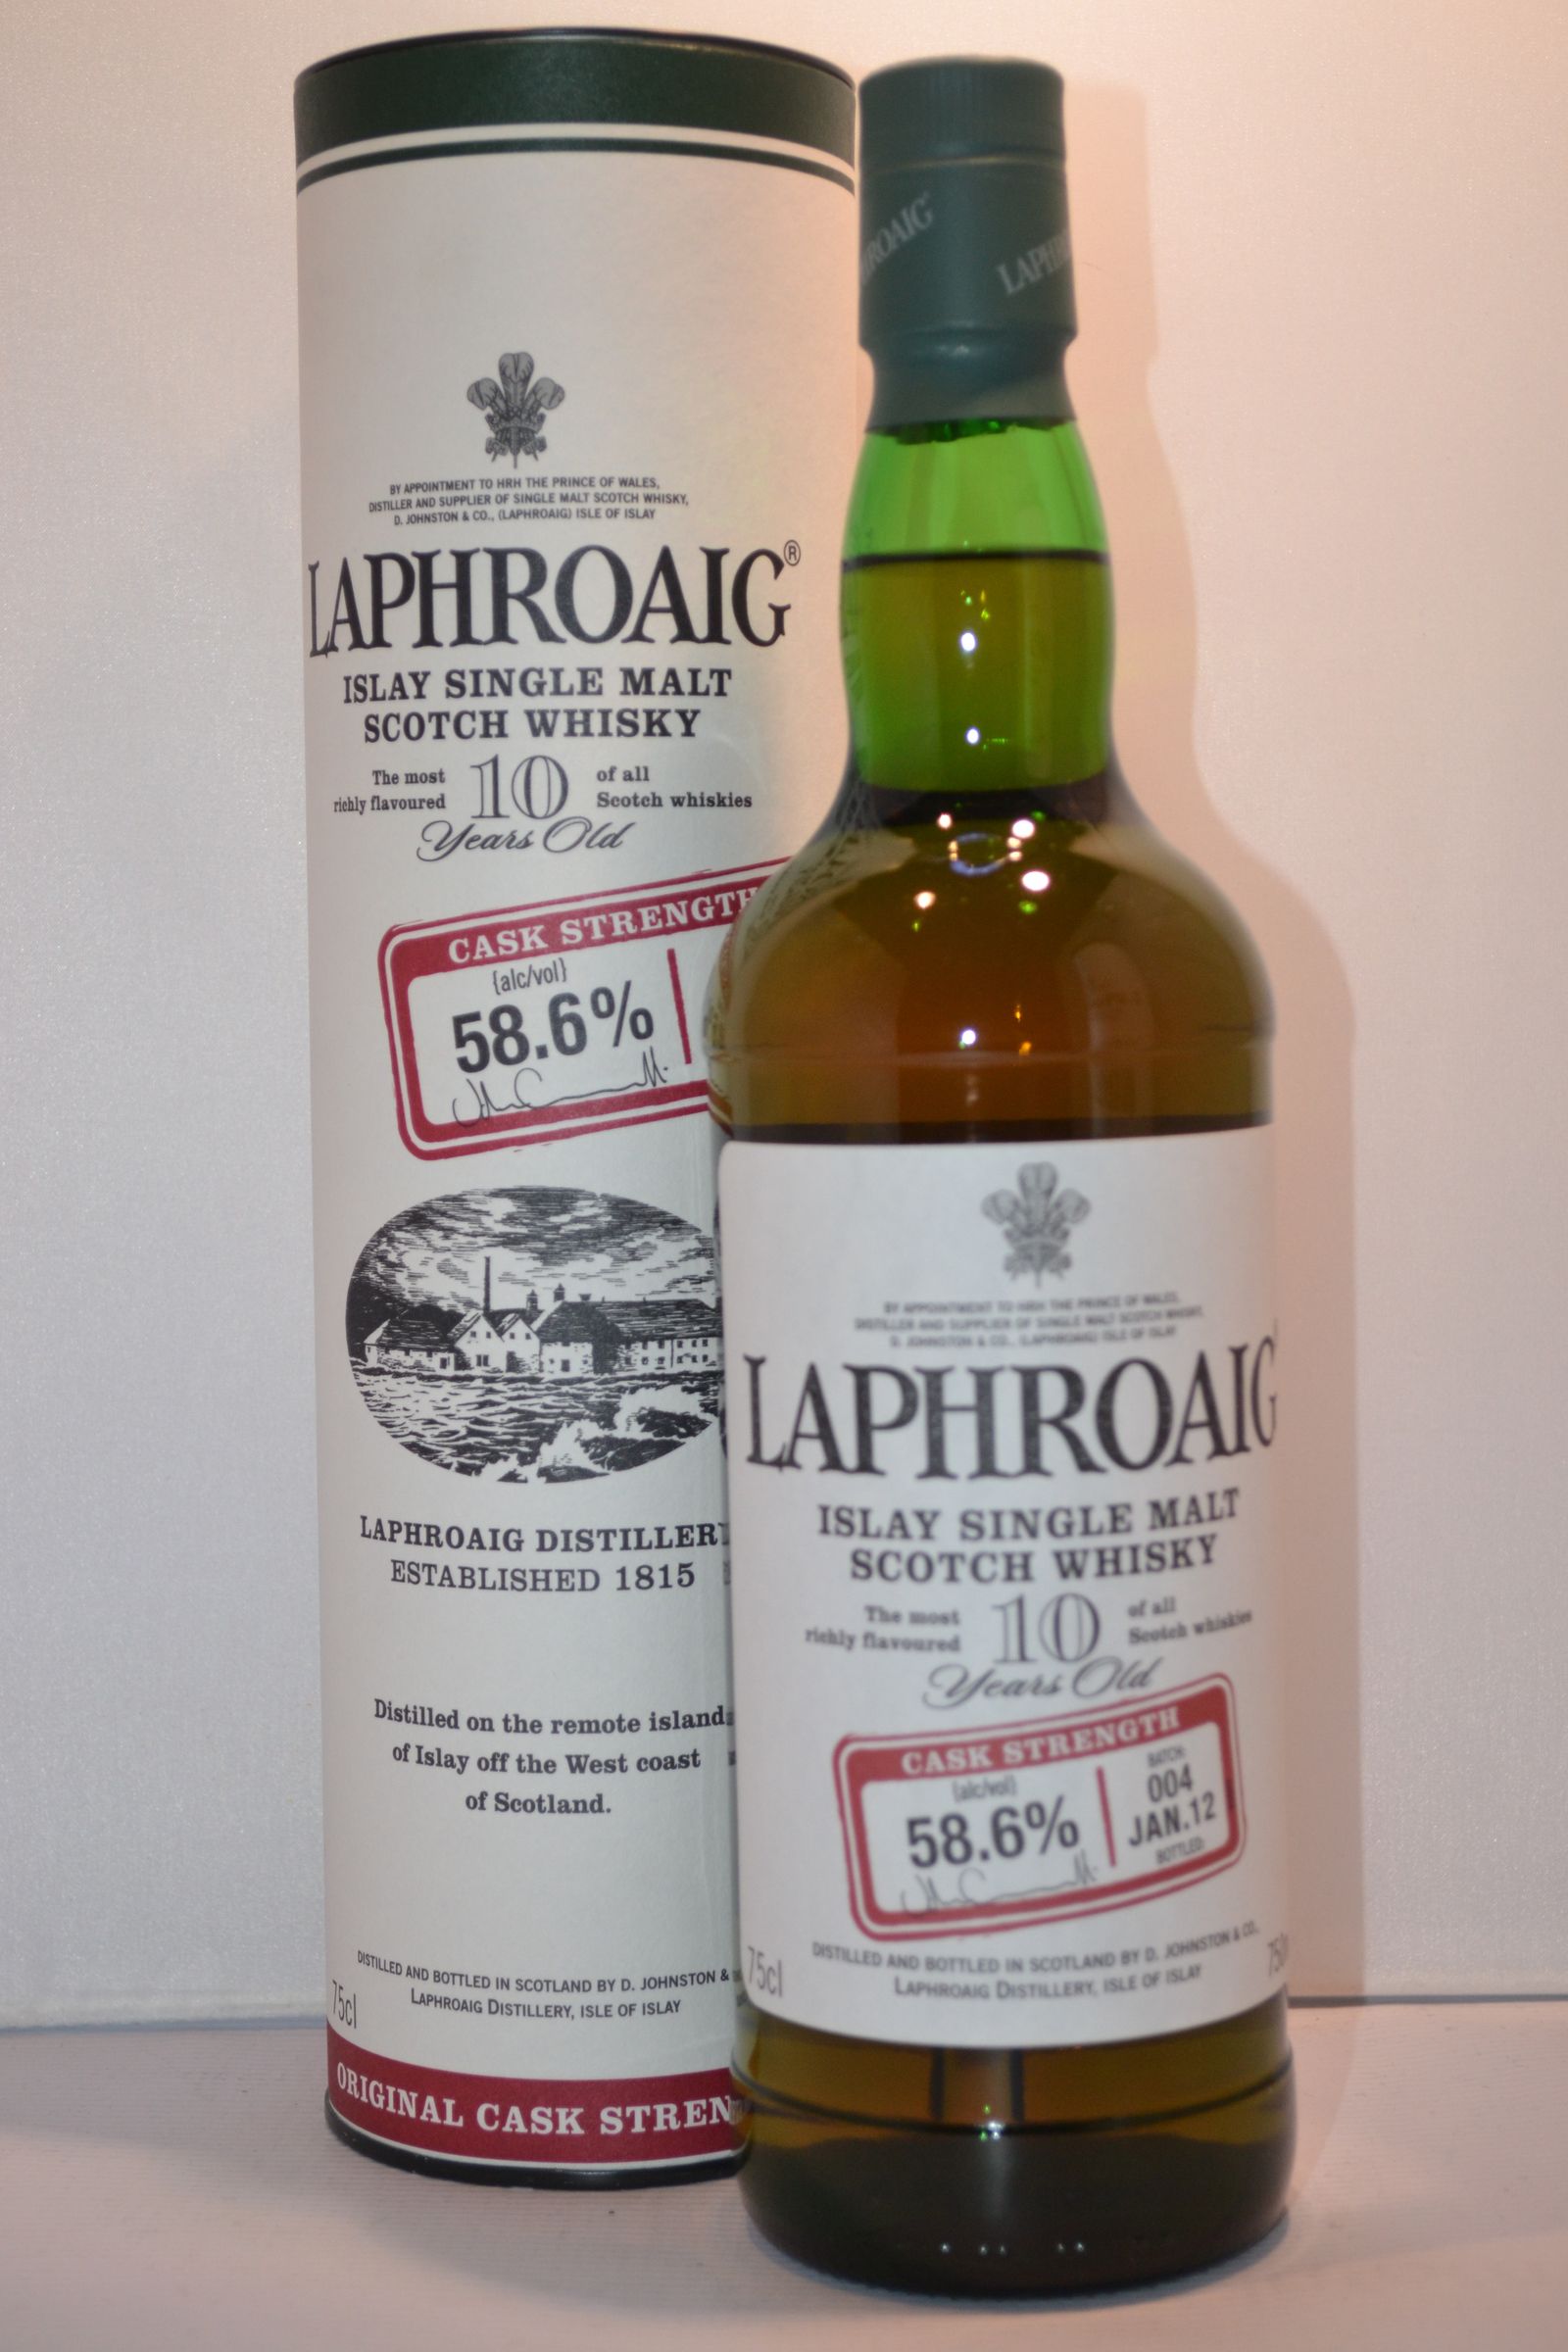 Laphroaig Scotch Single Malt Cask Strength Islay 10yr 750ml